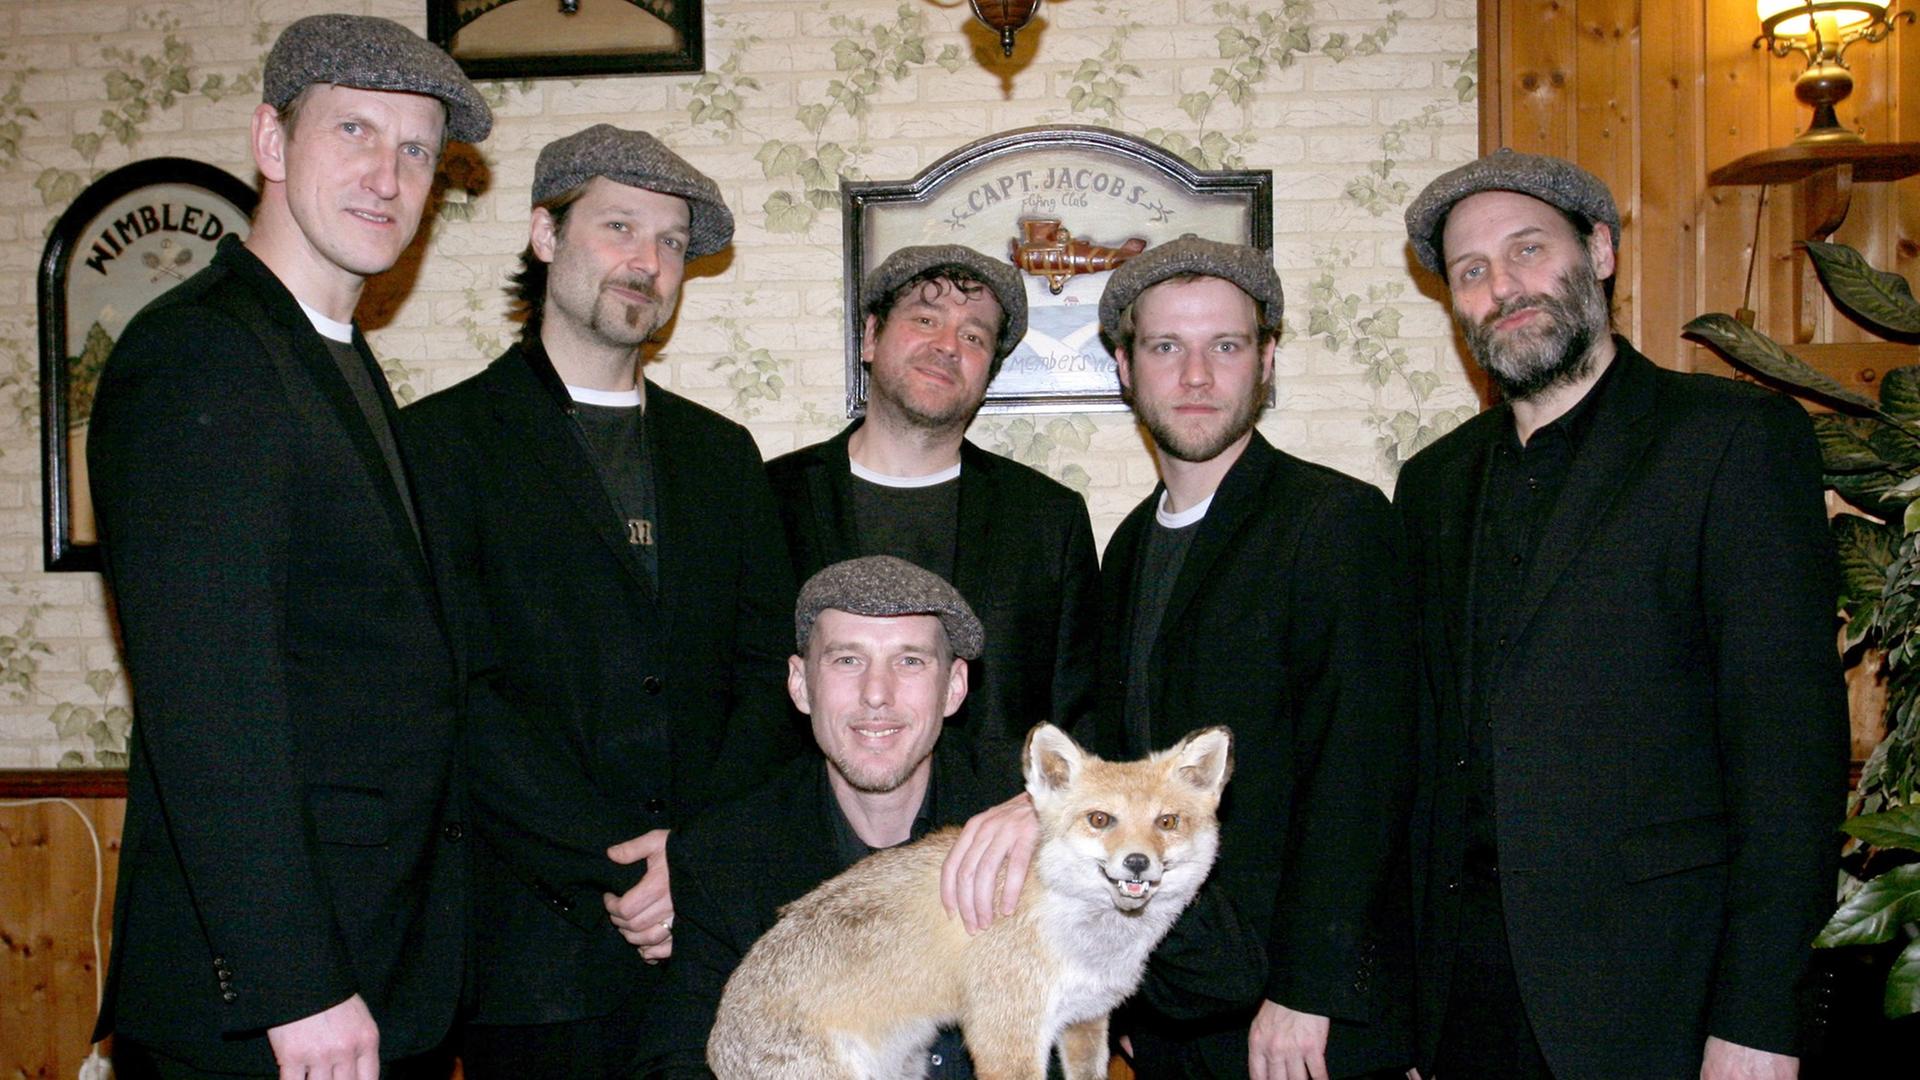 Die Mitglieder der Band "Jazzkantine" stehen zusammen in schwarzen Anzügen. Einer kniet in der Mitte und hält einen ausgestopften Fuchs in den Händen.